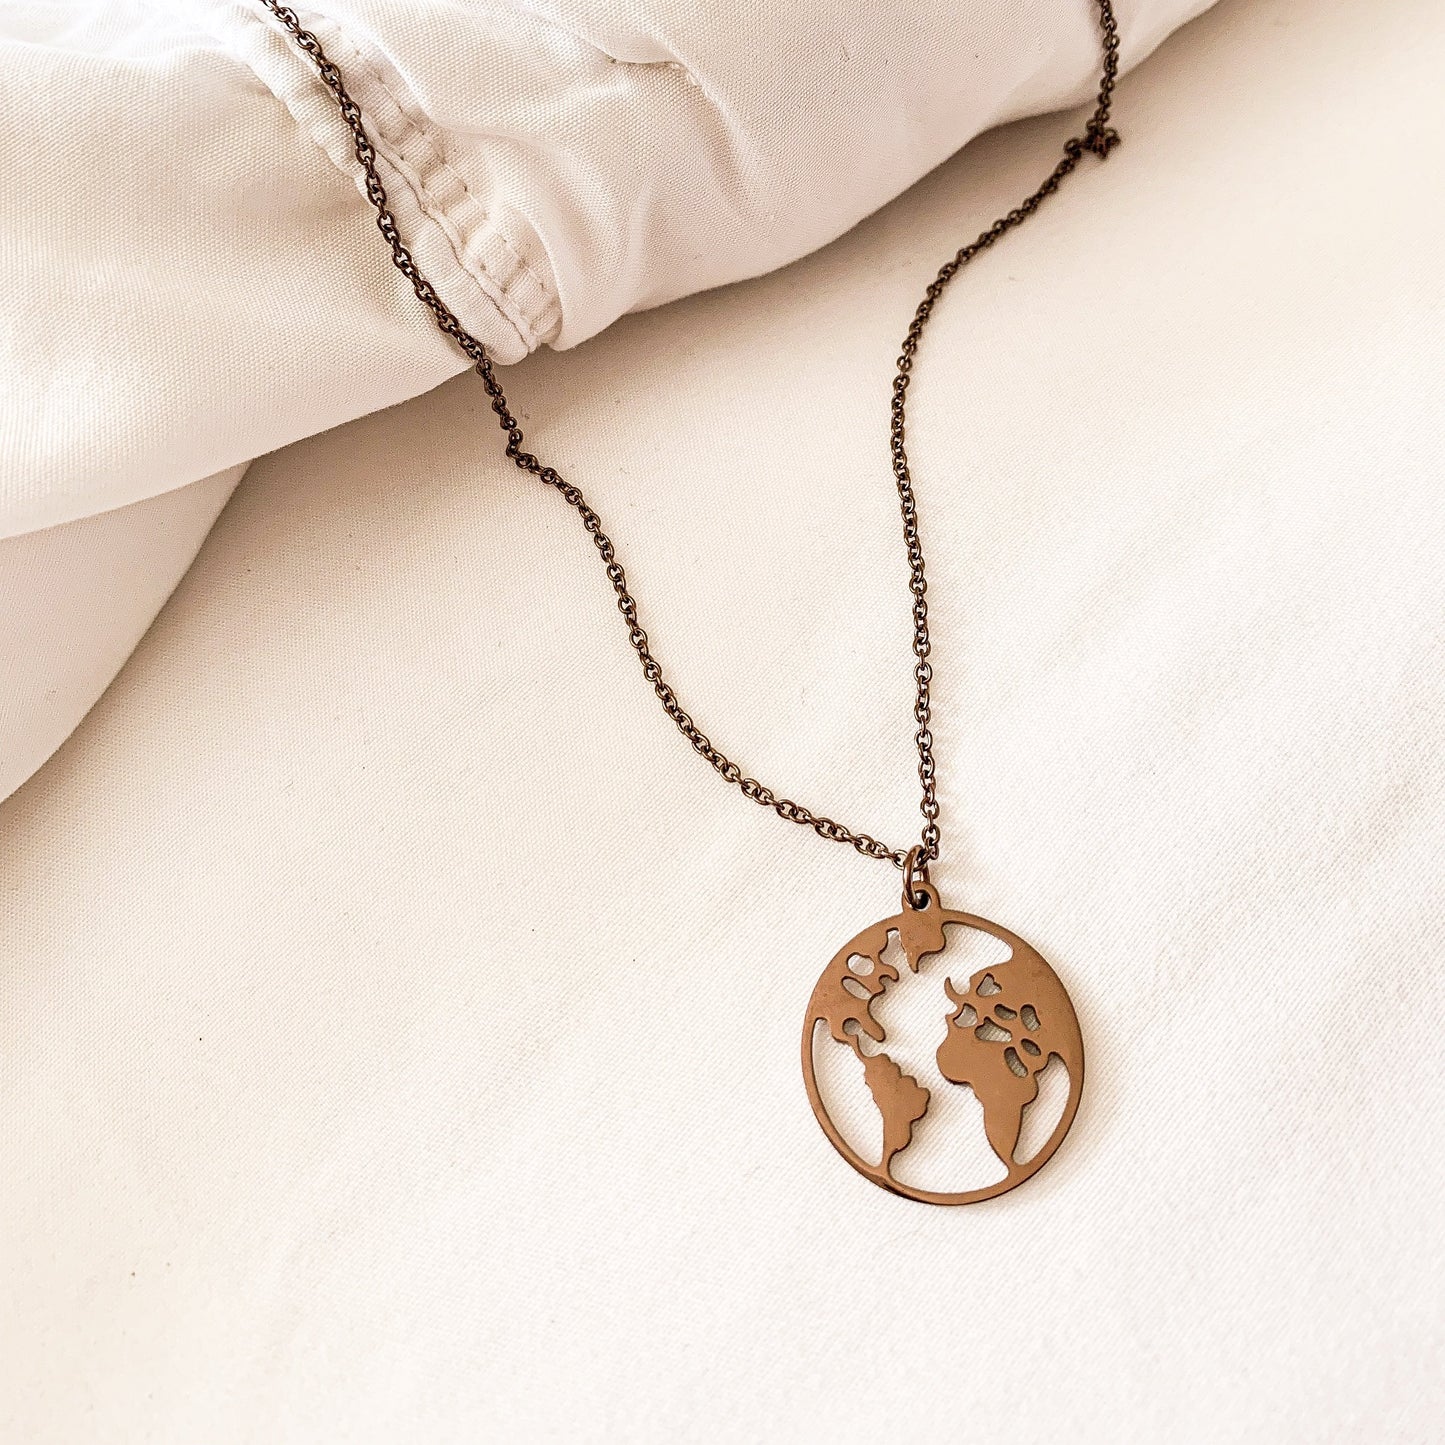 Coffee- ‘My World’ Necklace - Namaste Jewelry Canada